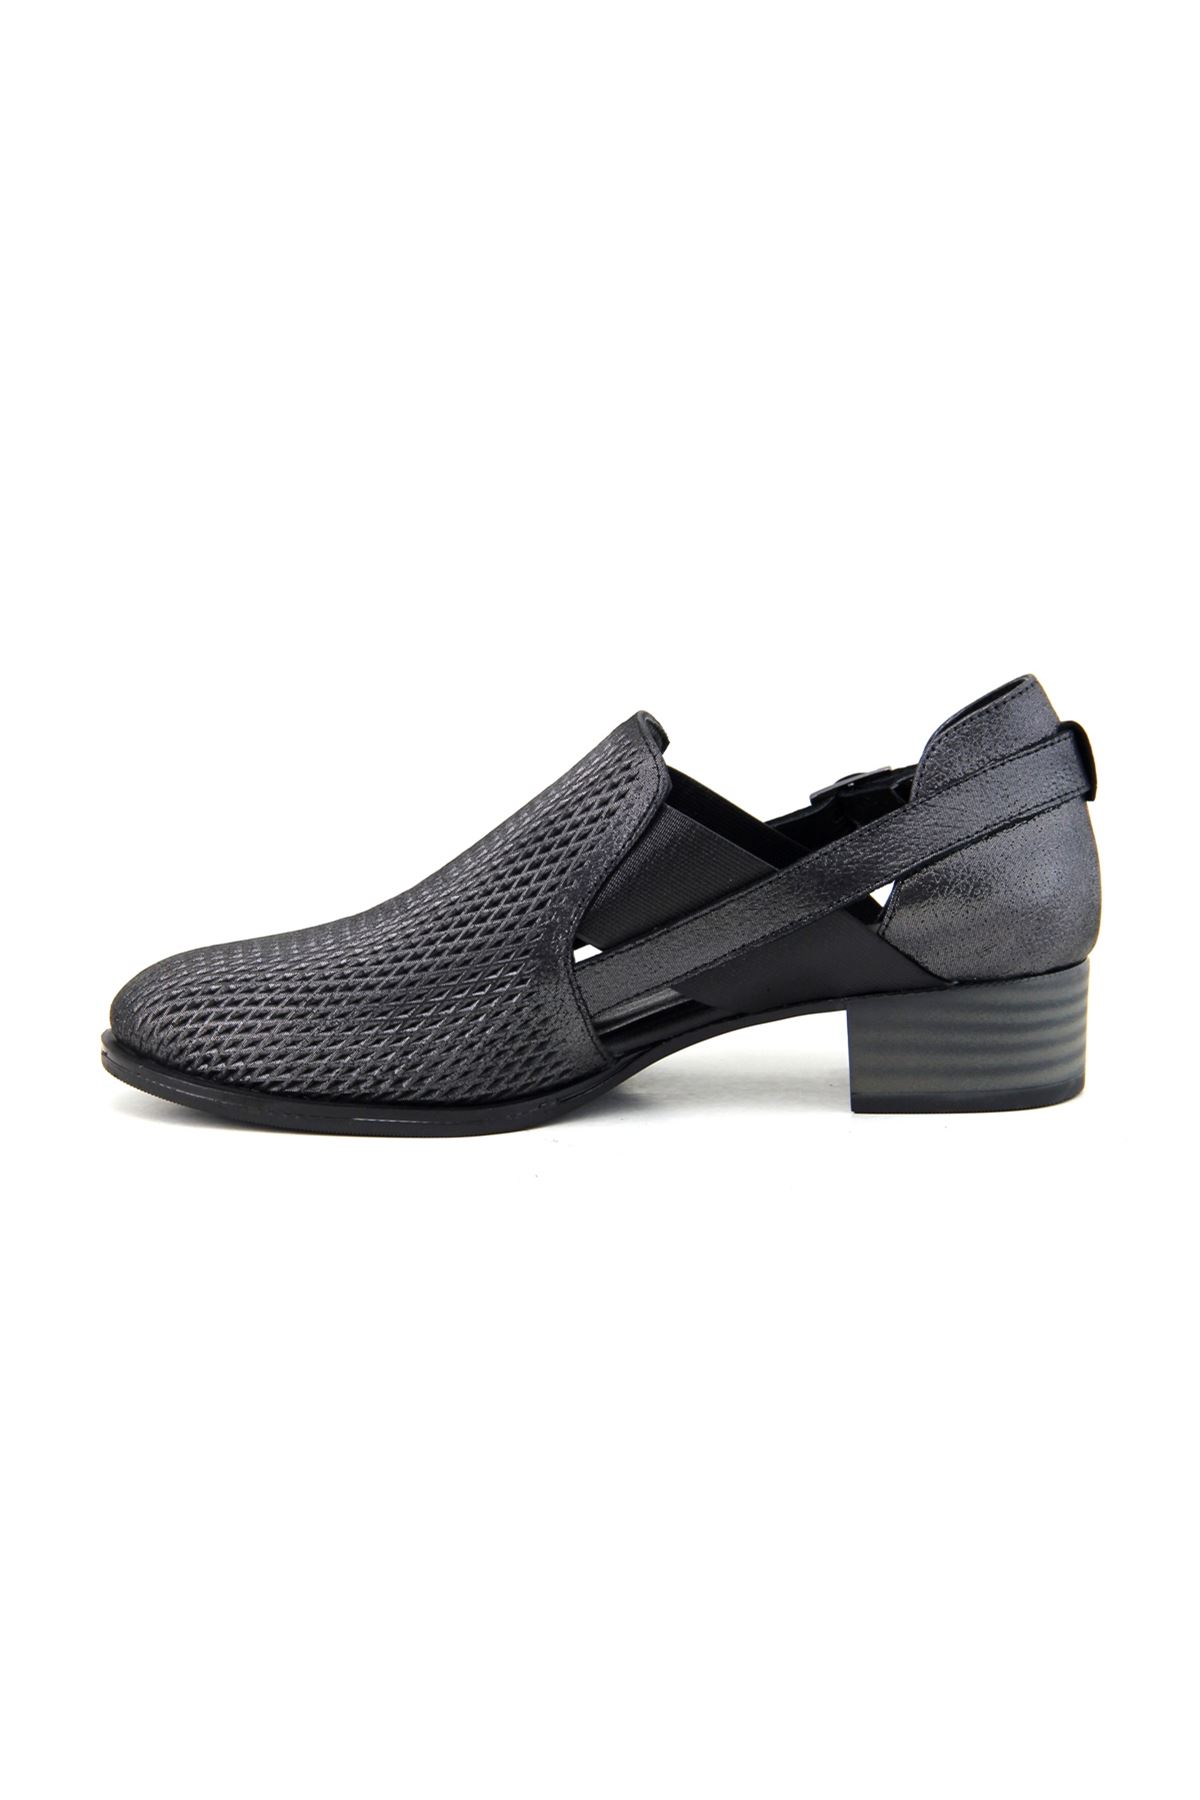 Mammamia D23YA-490 Hakiki Deri Kadın Ayakkabı - Siyah Çelik